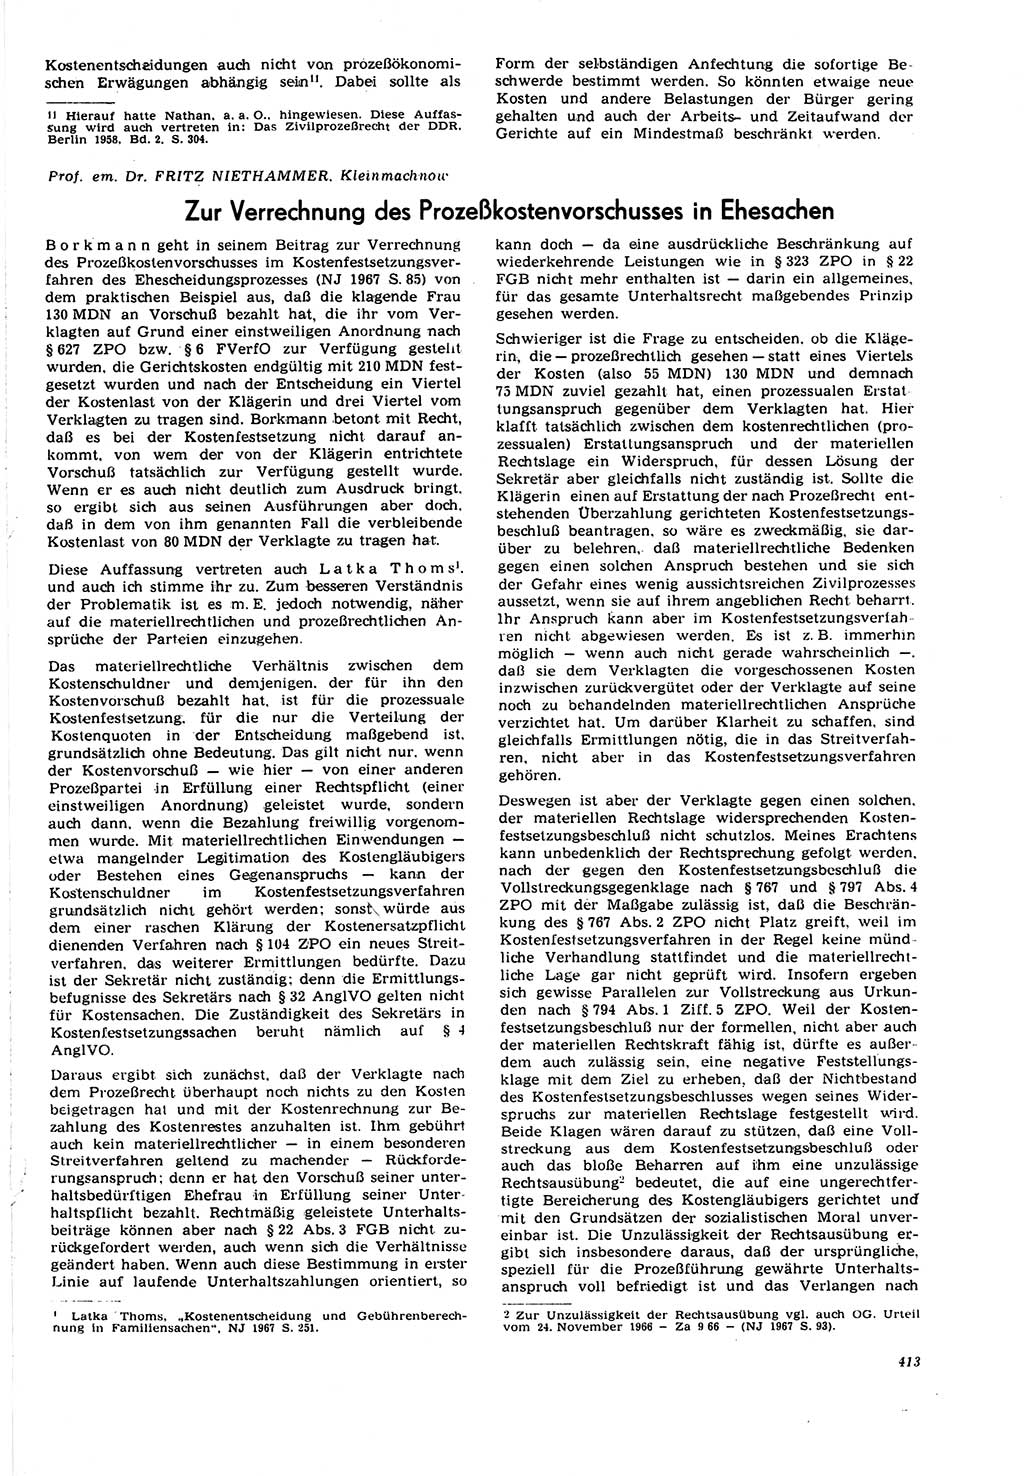 Neue Justiz (NJ), Zeitschrift für Recht und Rechtswissenschaft [Deutsche Demokratische Republik (DDR)], 21. Jahrgang 1967, Seite 413 (NJ DDR 1967, S. 413)